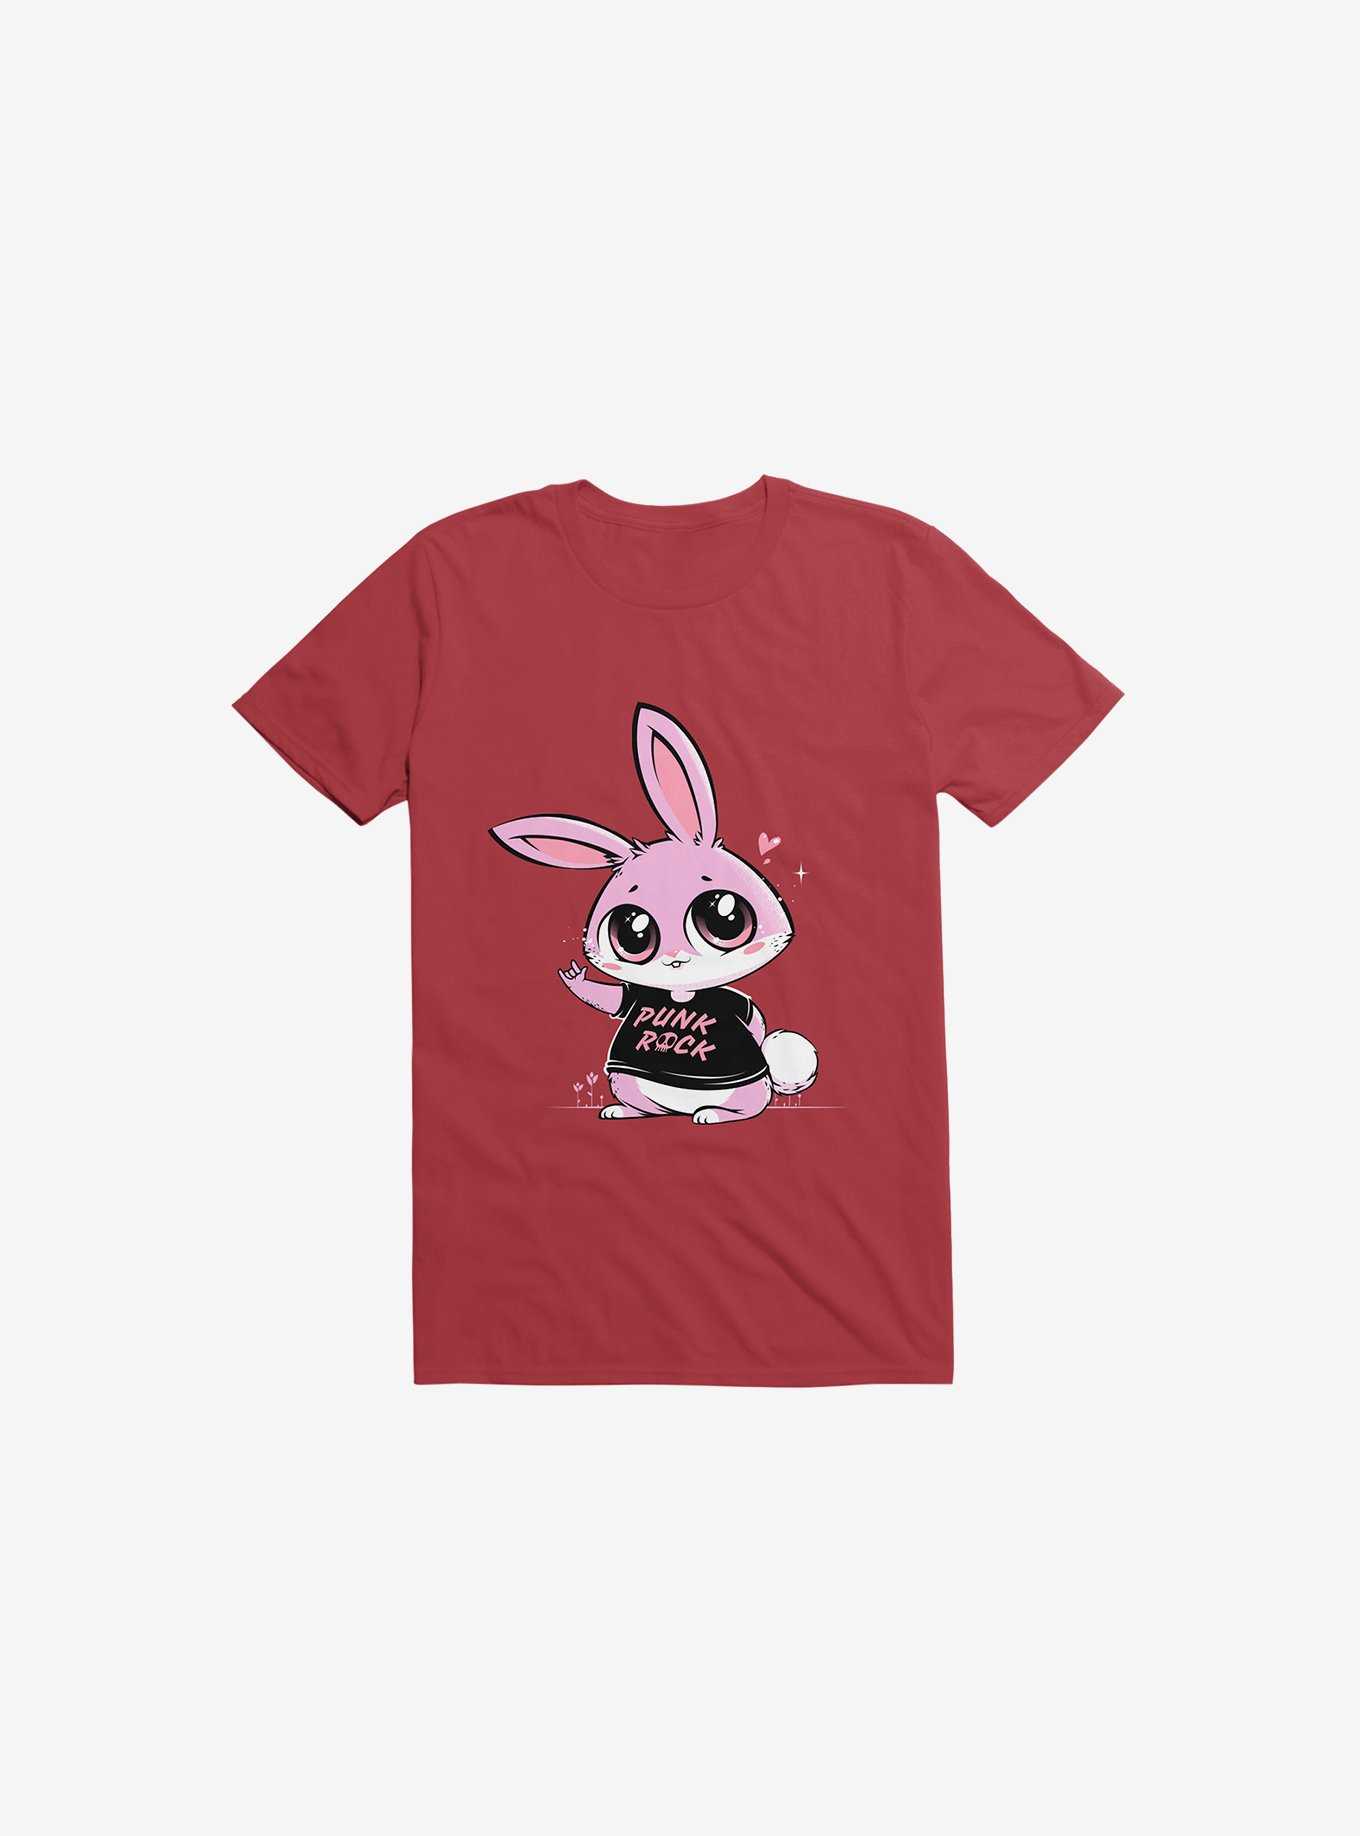 Punk Rock Bunny T-Shirt, , hi-res